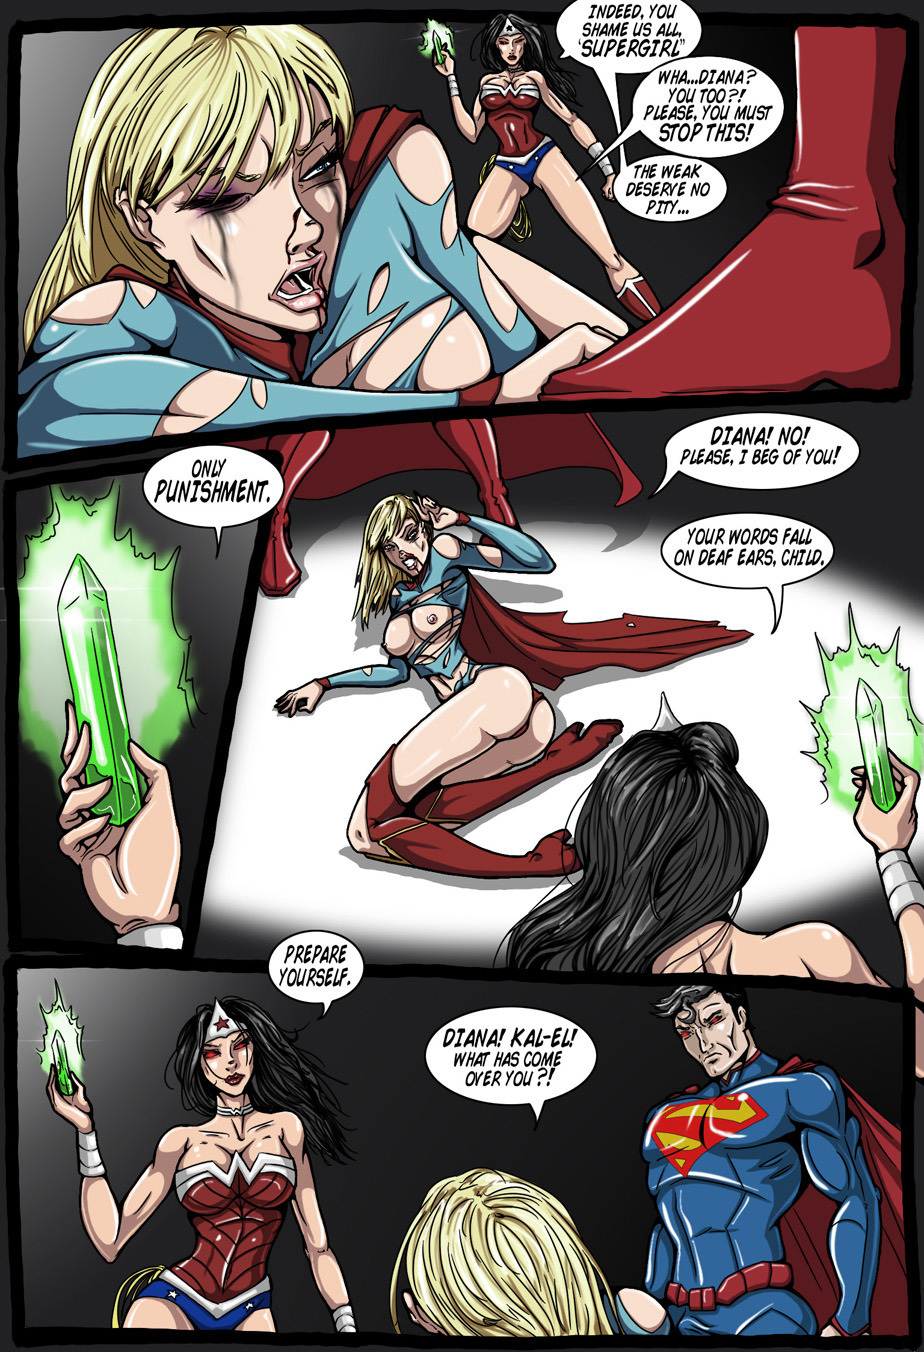 True Injustice - Supergirl - KingComiX.com